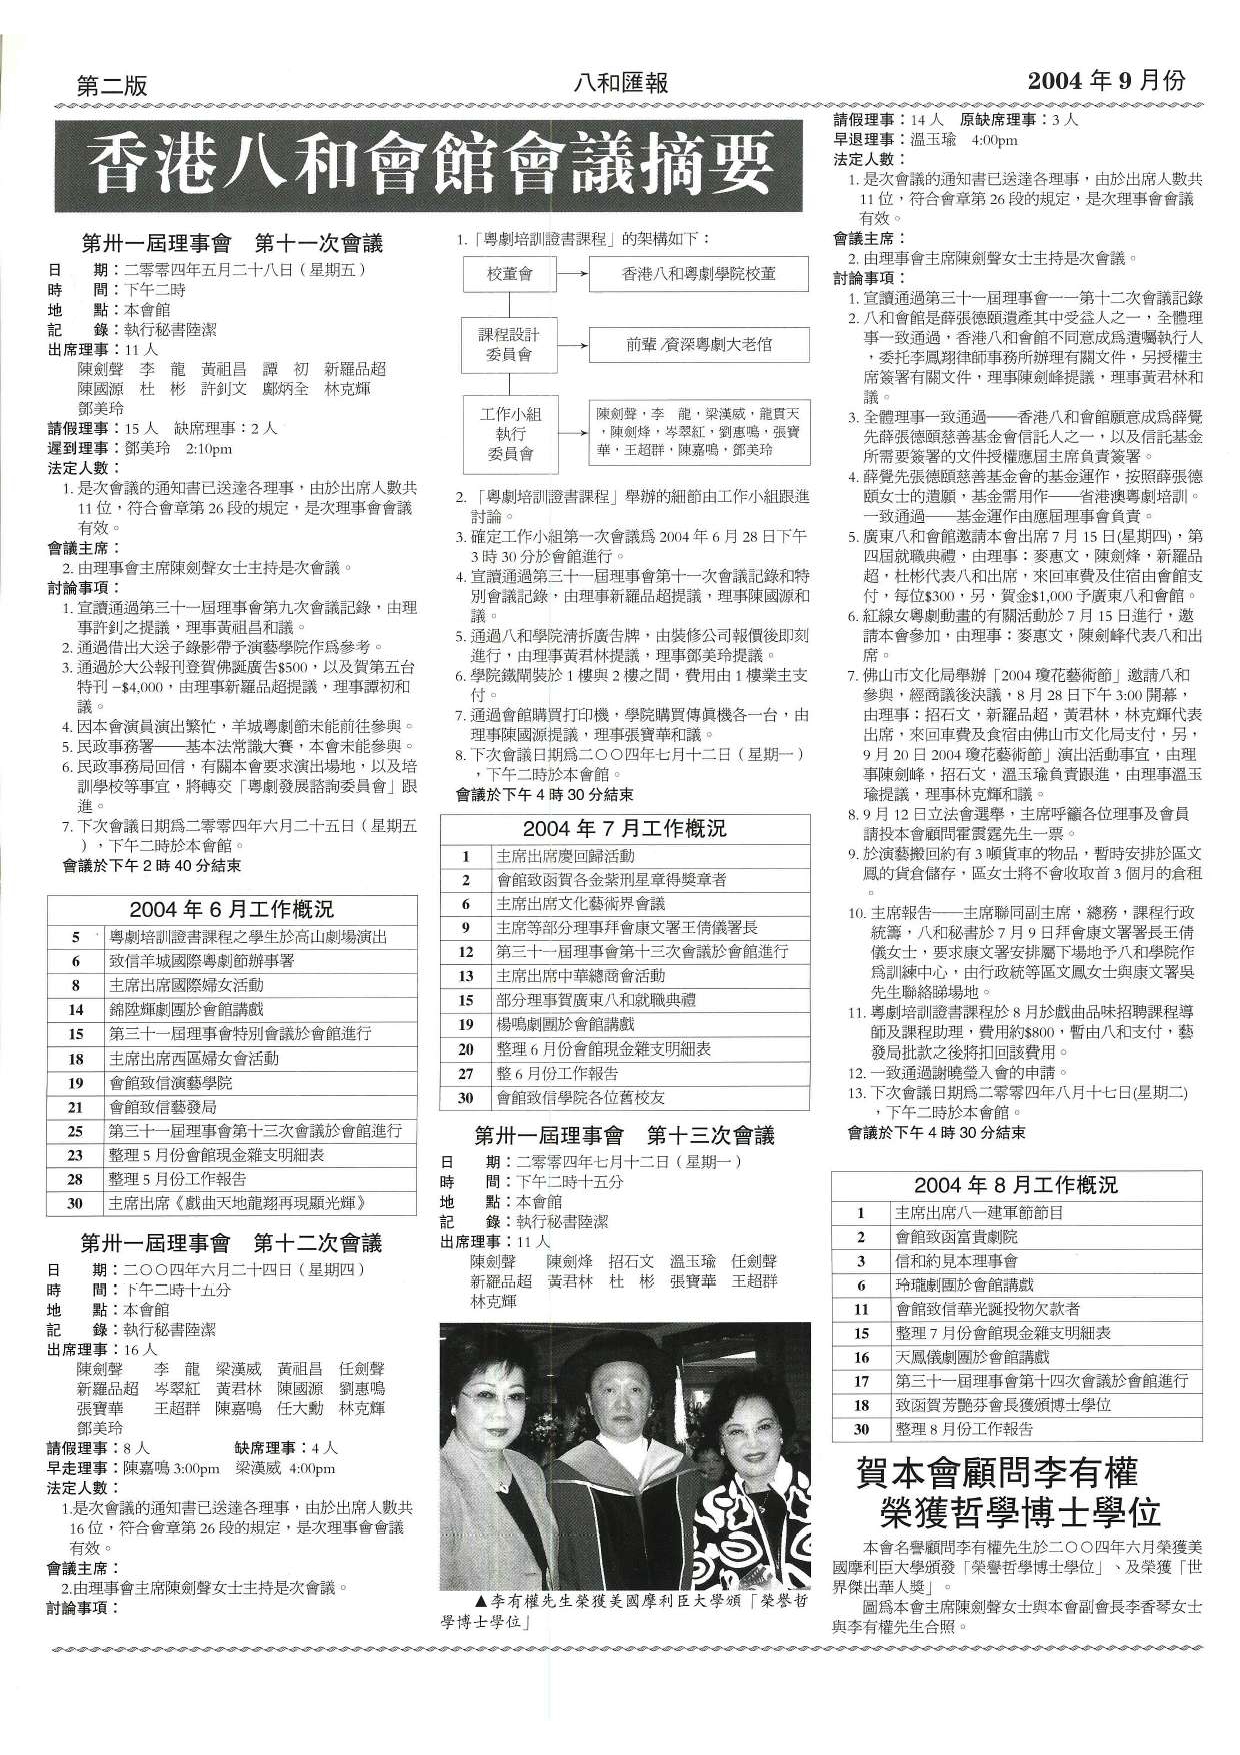 香港八和會館第三十一屆理事會第十一至十三次會議議程及辦公室報告（2004年6月至8月） | 賀本會顧問李有權榮獲哲學博士學位